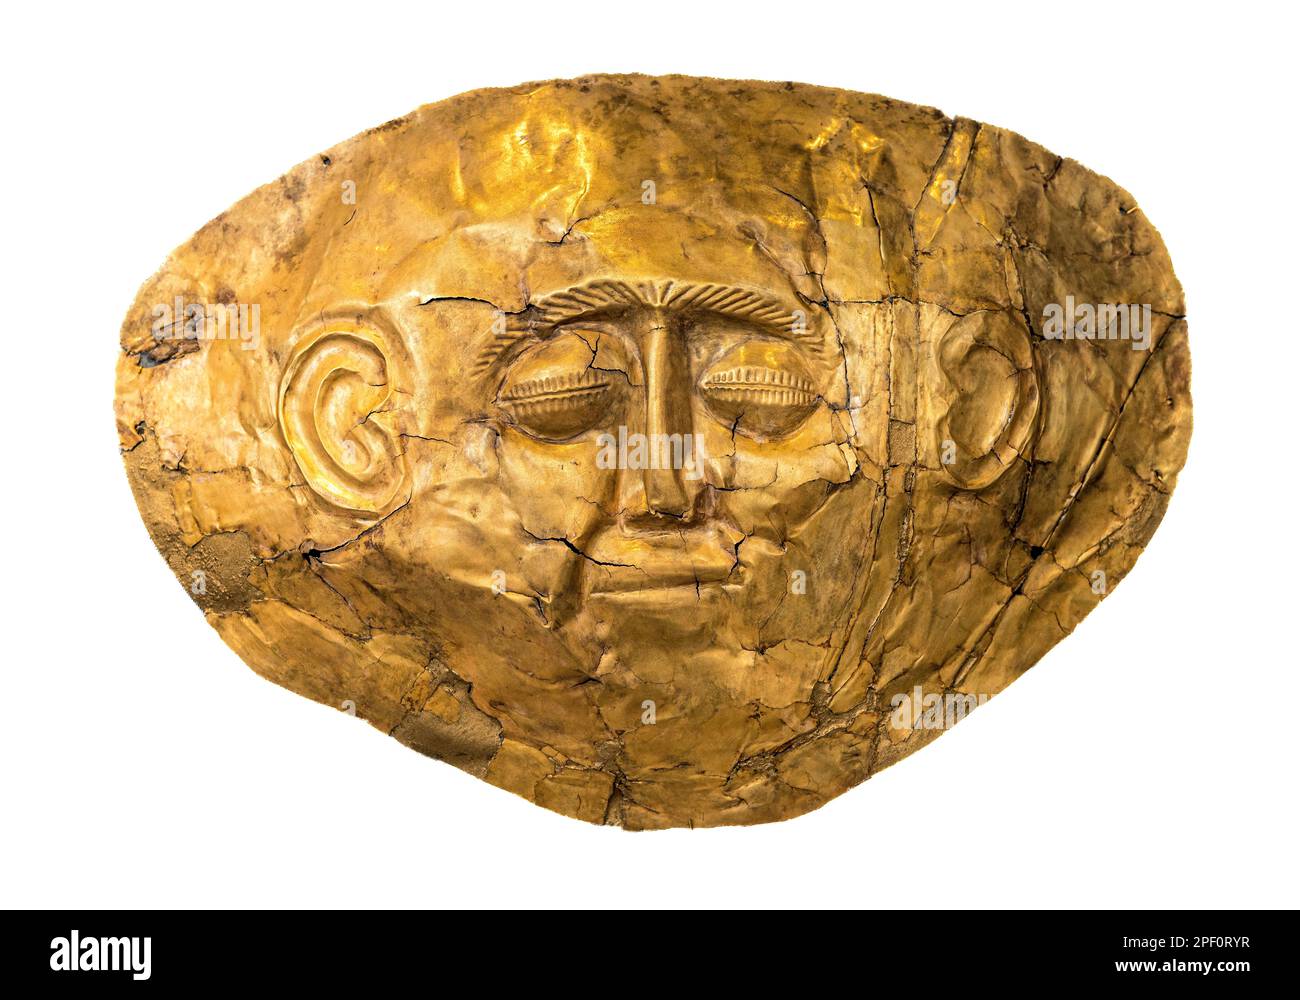 Eine goldene Grabmaske aus dem 16. Jahrhundert v. Chr. aus Grab IV des Grabkreises A im antiken Mykene, Peloponnes, Griechenland. Stockfoto